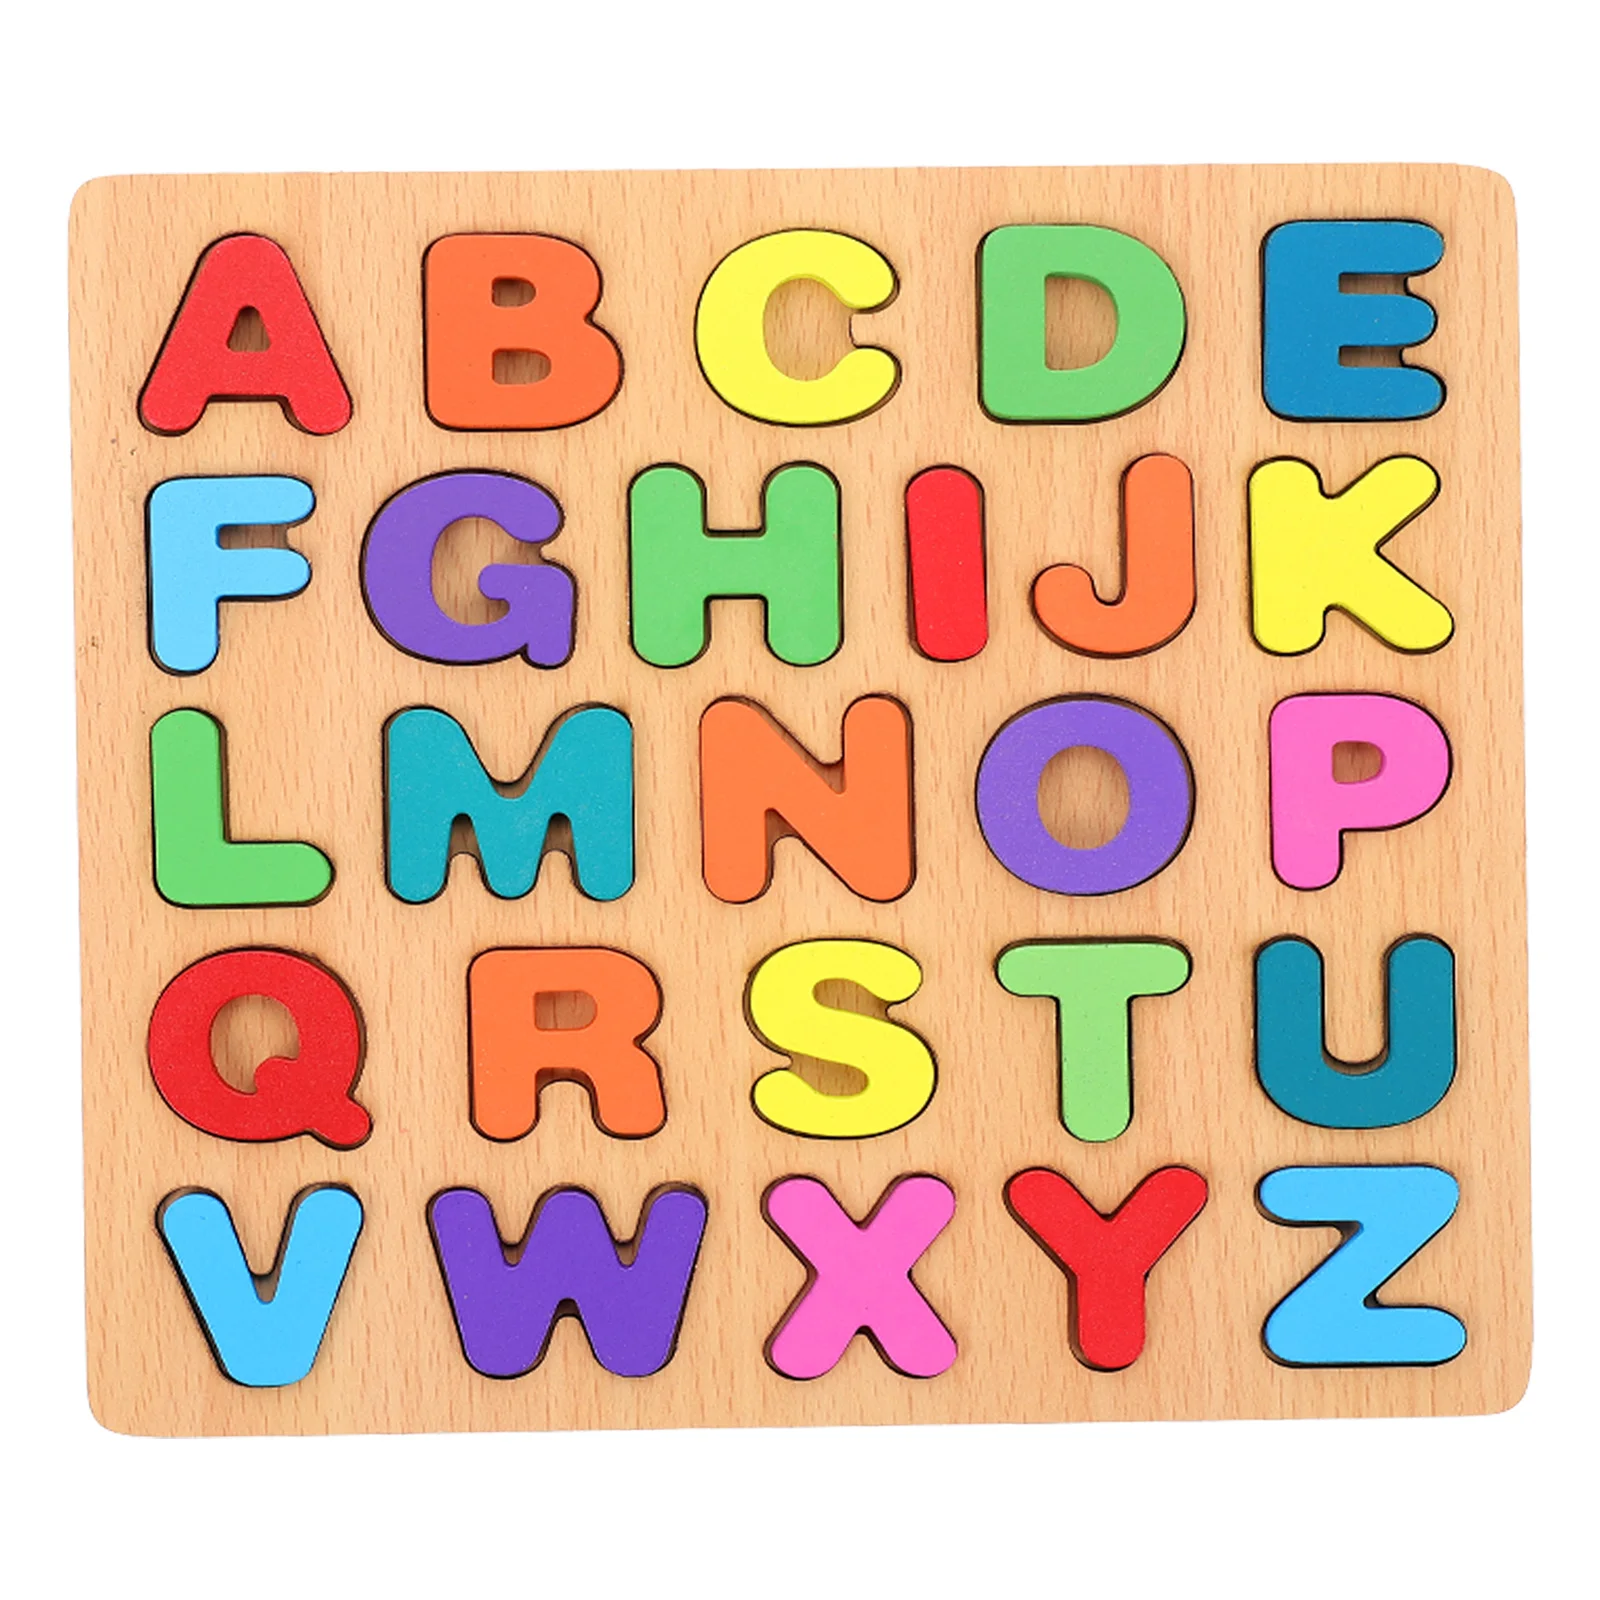 

Пазл для раннего развития, детские игрушки с алфавитом, деревянные Обучающие Детские пазлы для обучения, подходящие для малышей